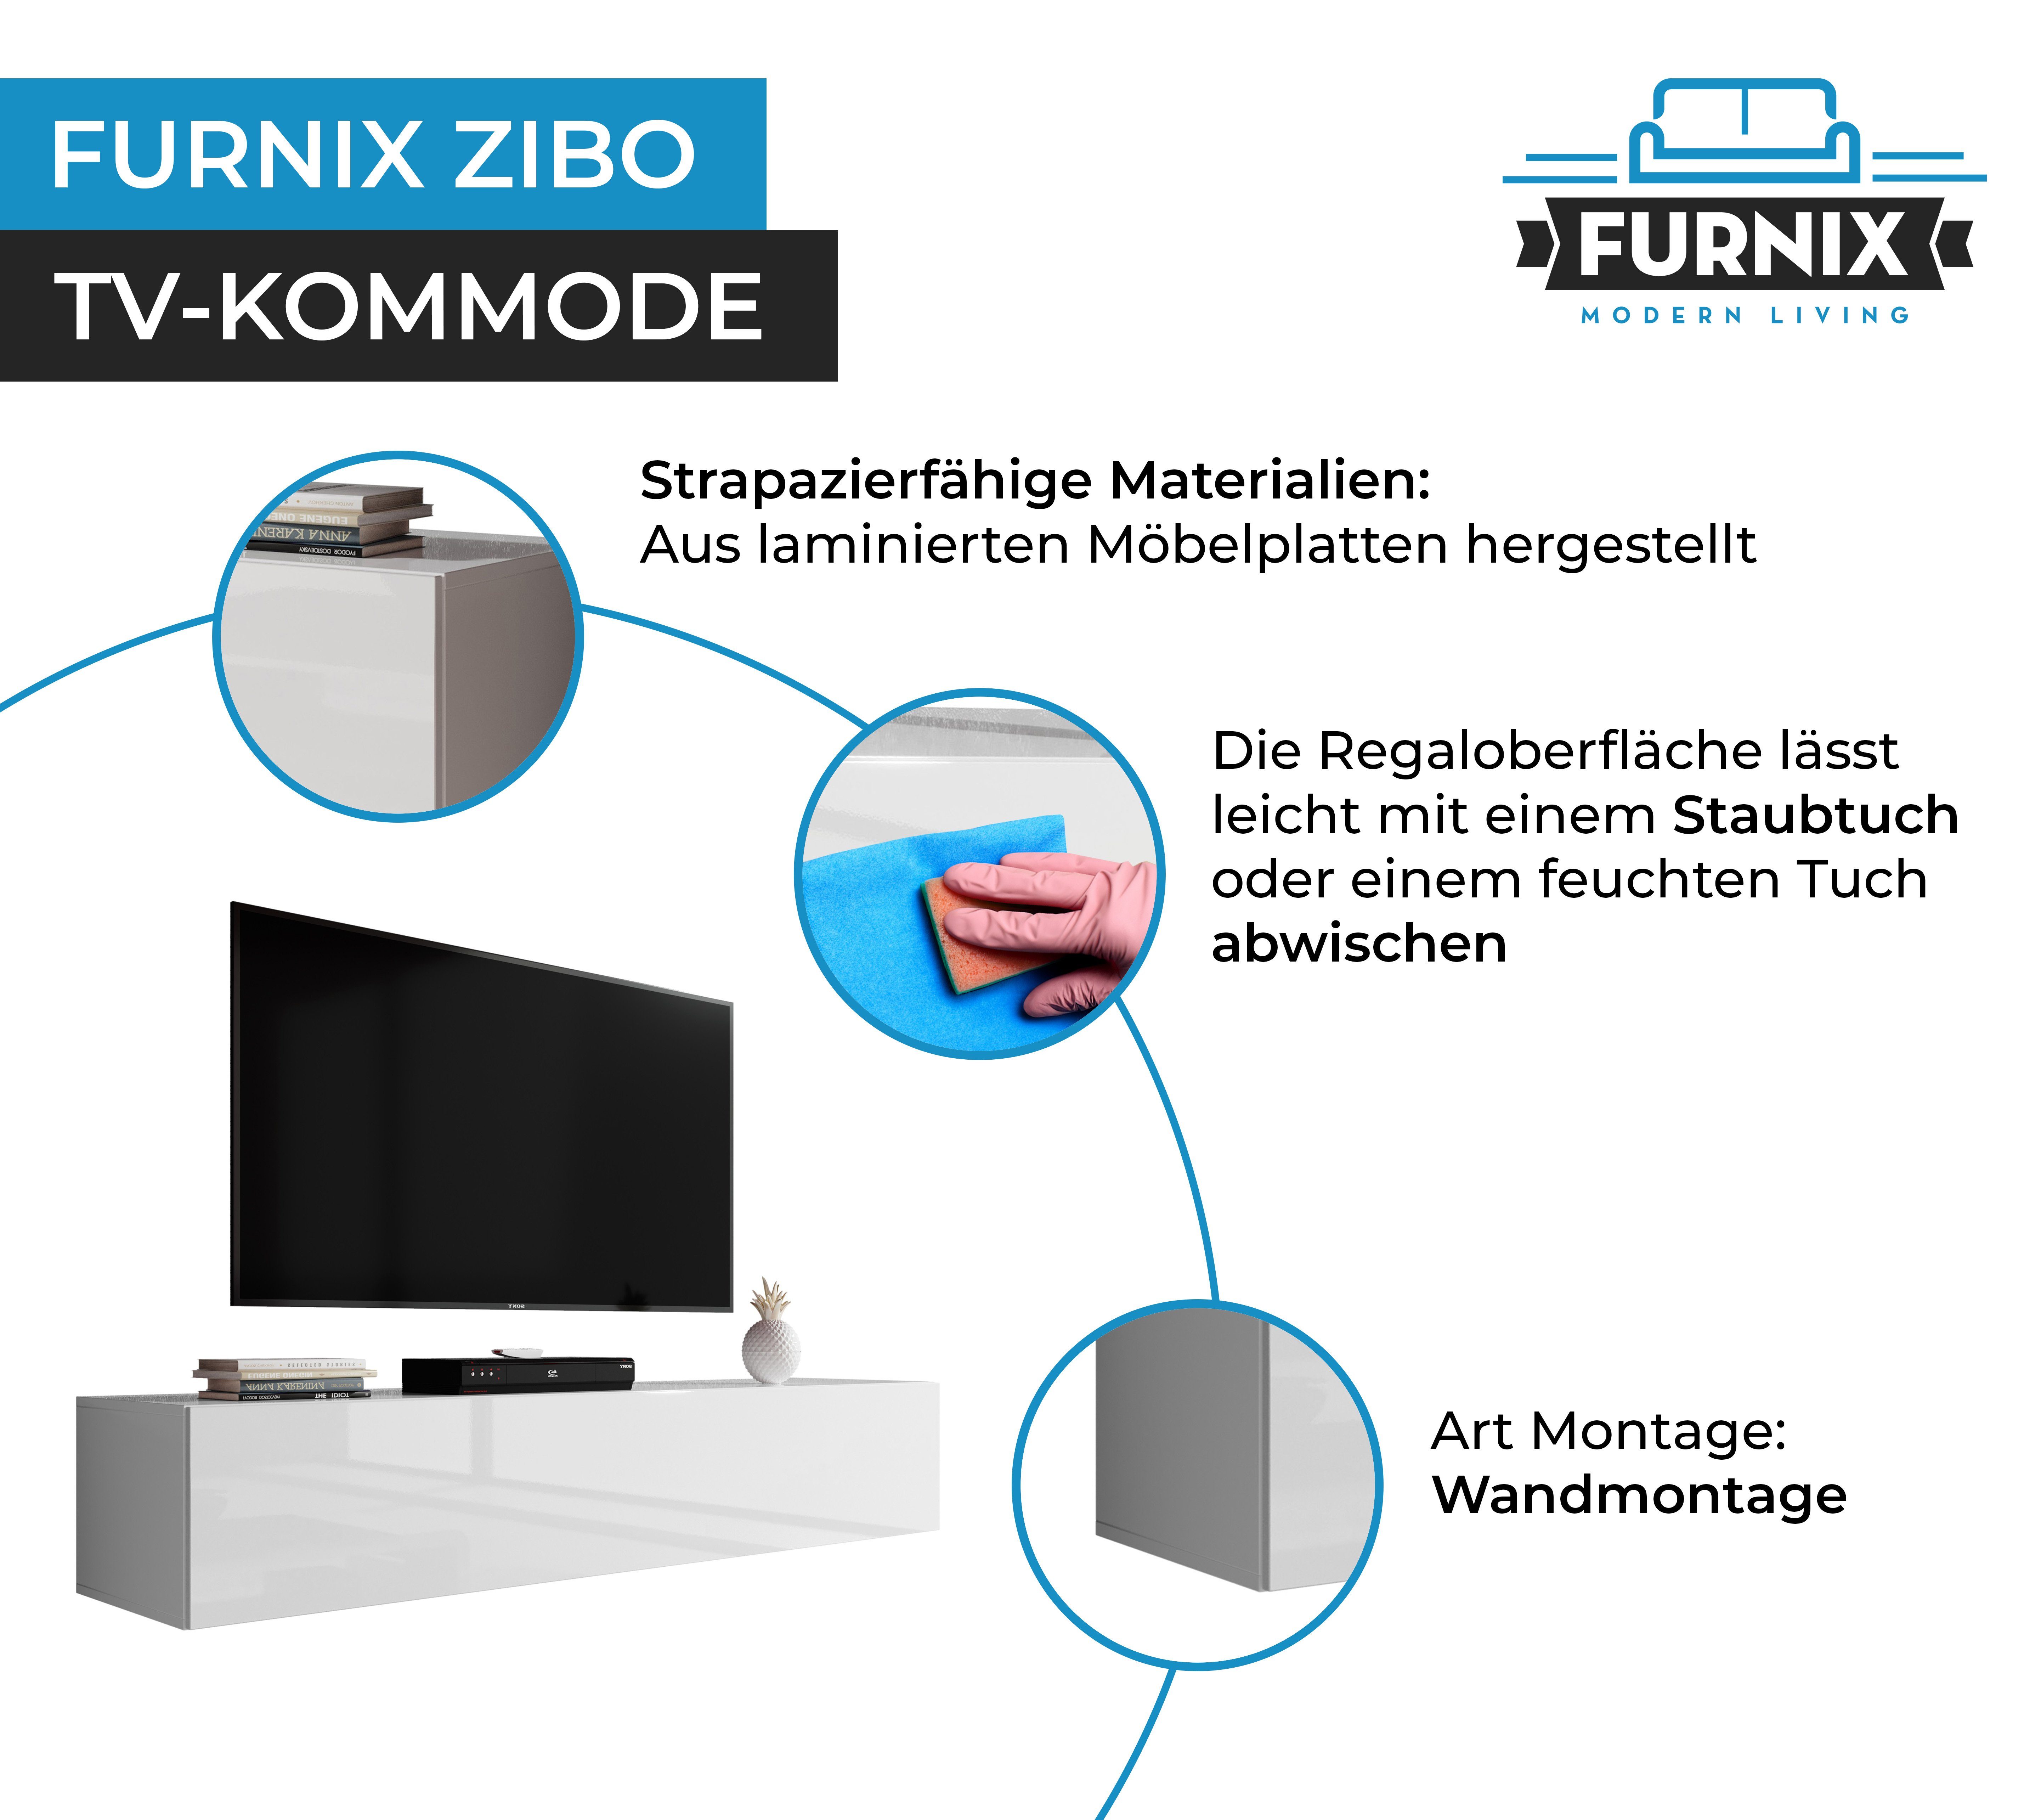 T40 B160 ZIBO x Weiß Furnix x TV-Schrank Weiß/Glanz H34 breit Hängeboard cm Lowboard 160